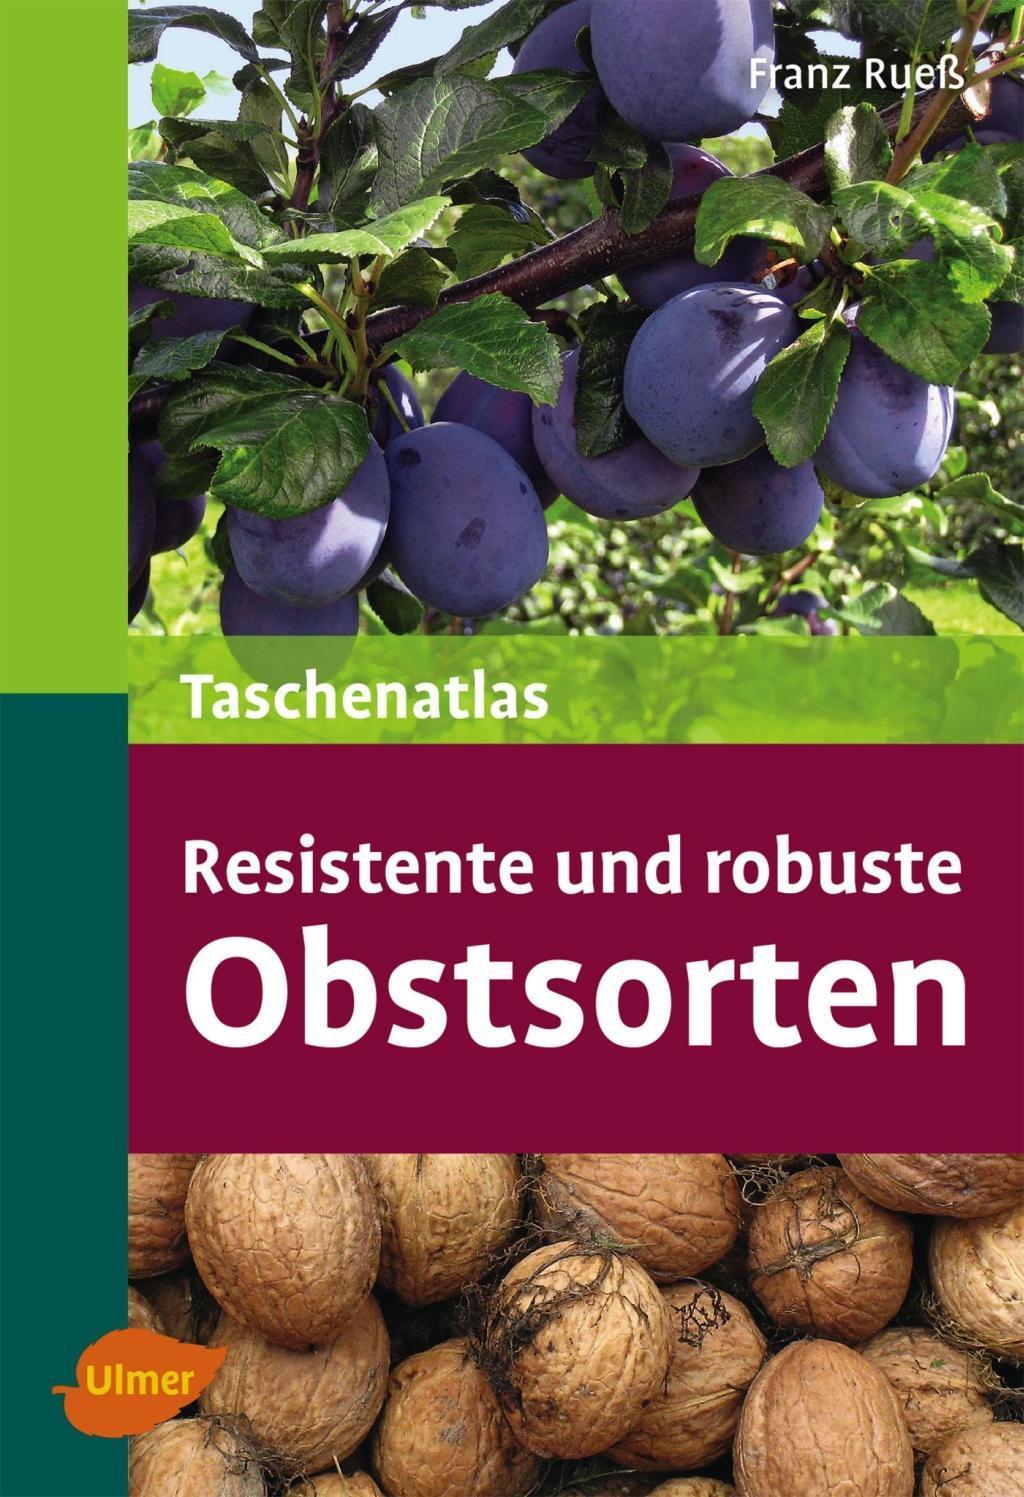 Taschenatlas resistente und robuste Obstsorten - Ruess, Franz